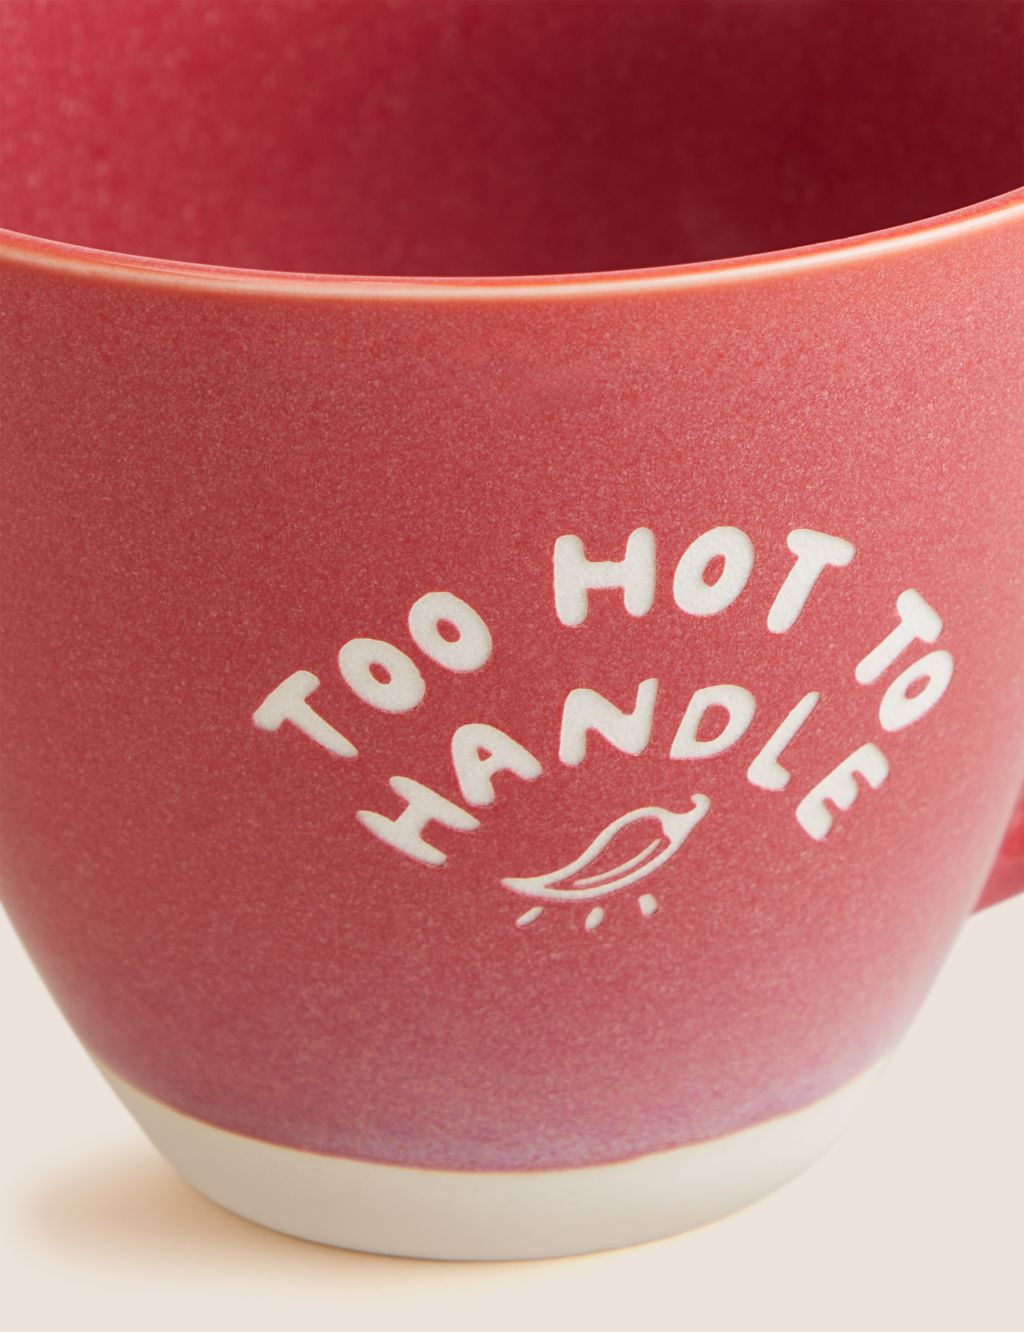 Too Hot To Handle Slogan Mug 1 of 3